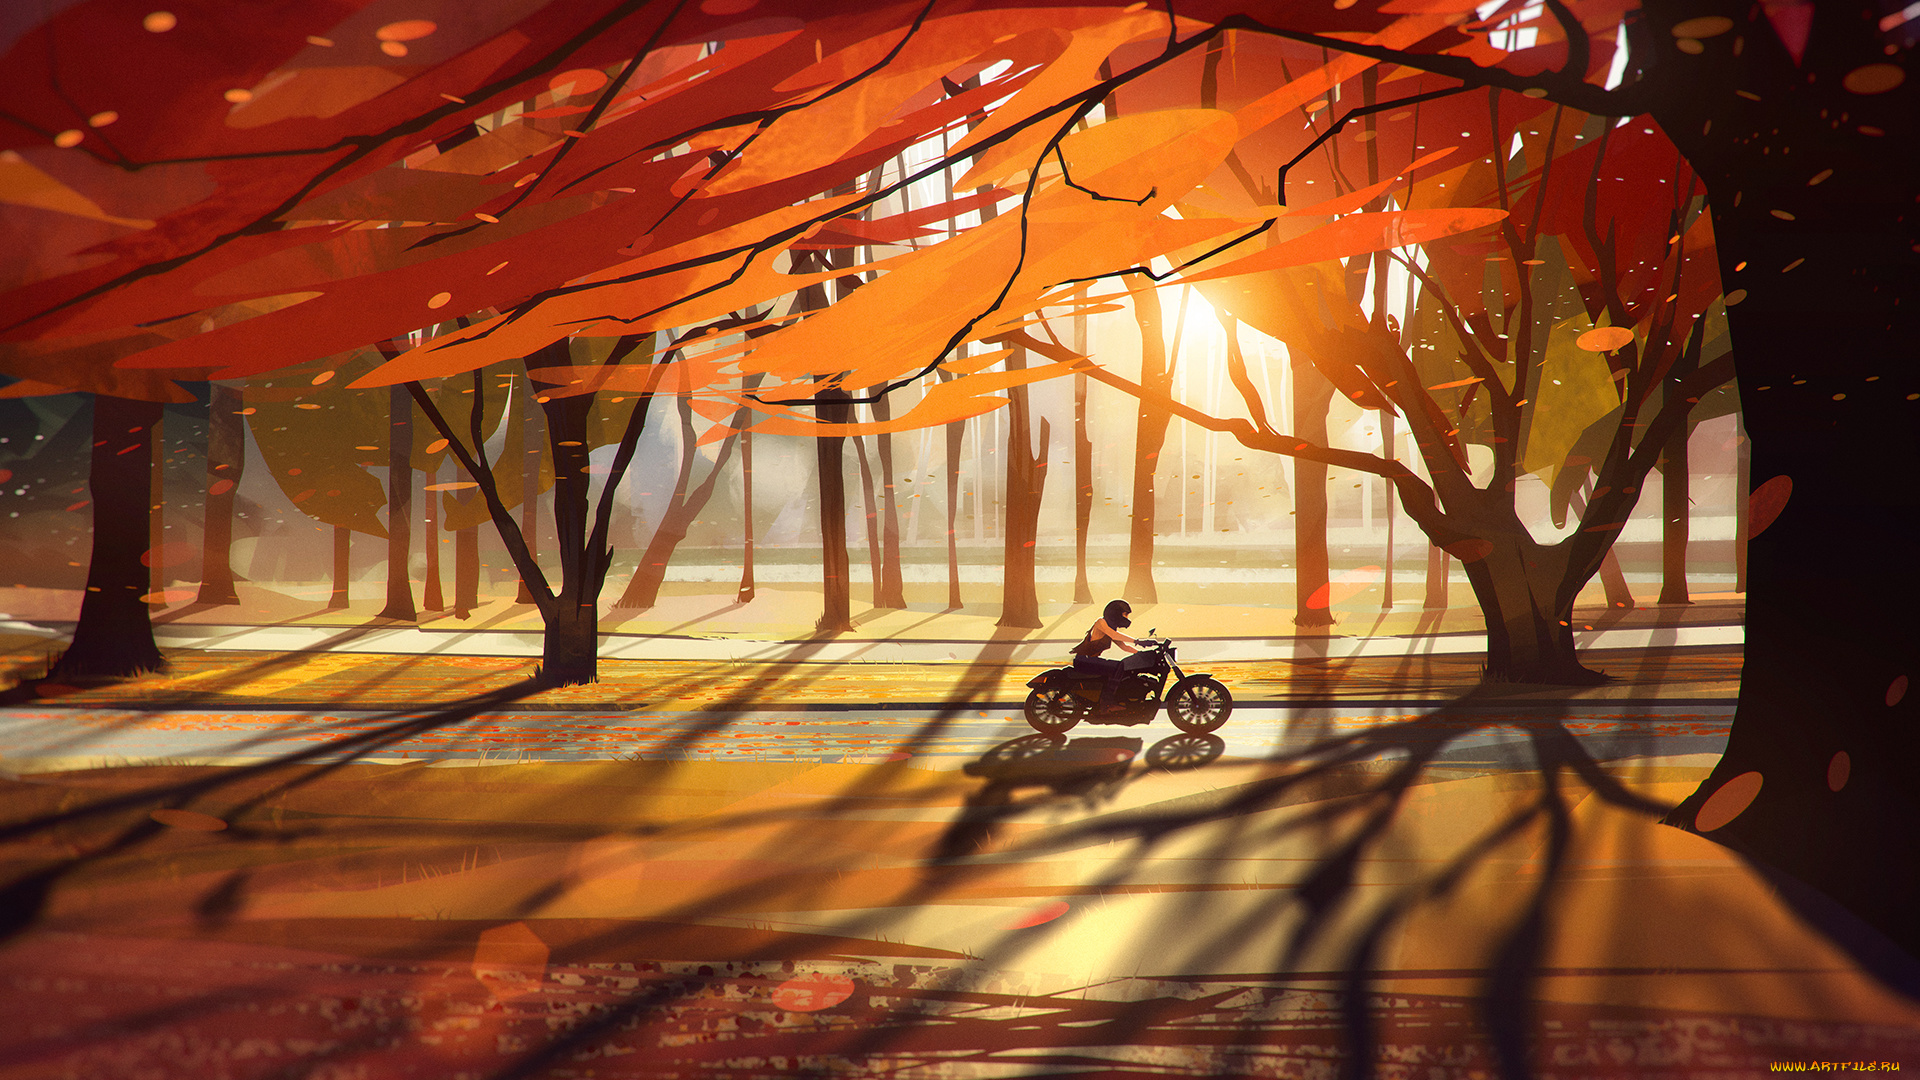 рисованное, природа, дорога, деревья, девушка, байк, мотоцикл, листья, лес, осень